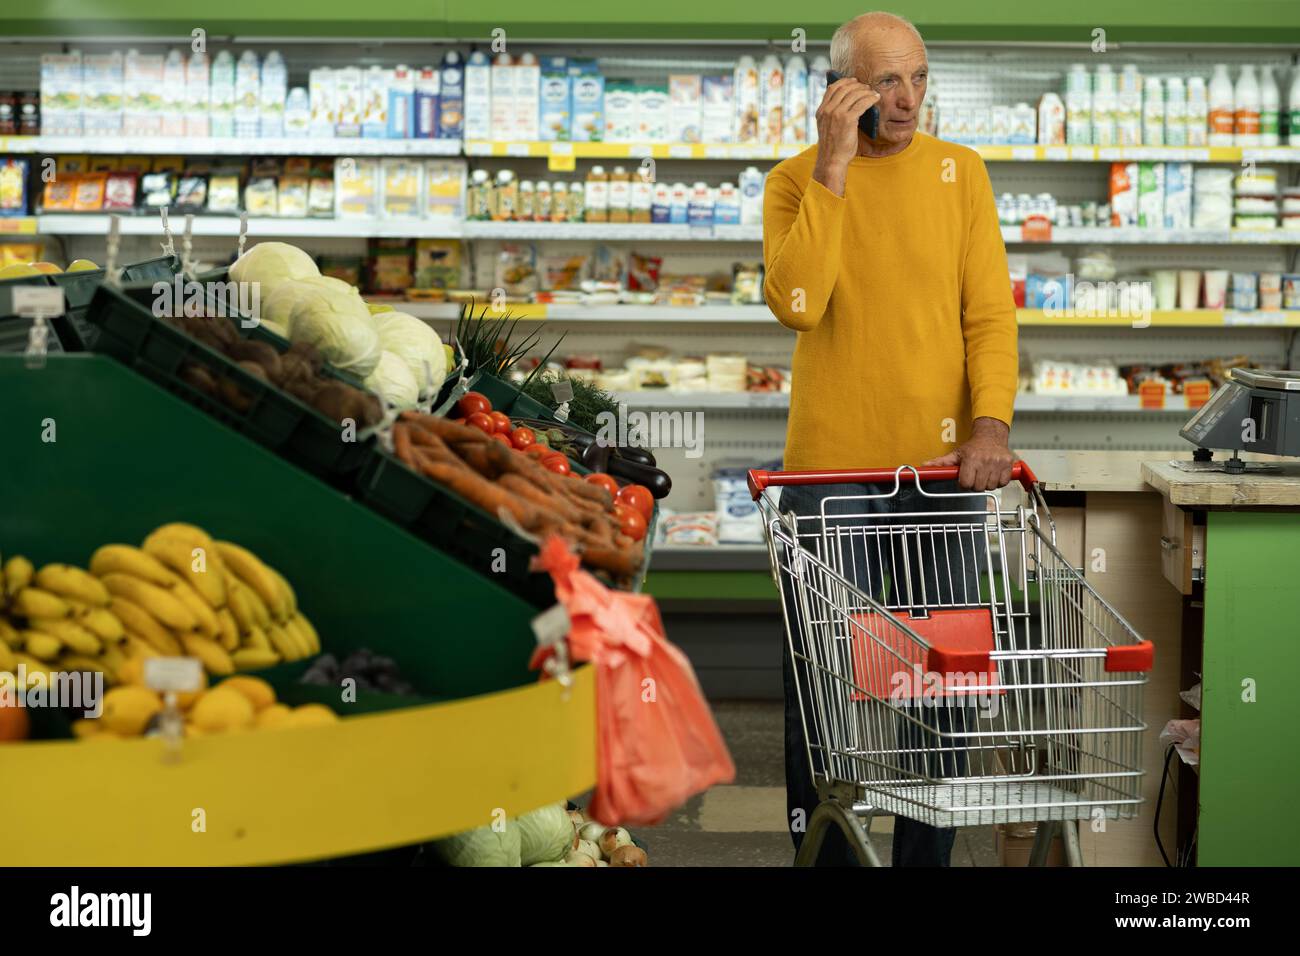 Supermarkt, Lebensmittelgeschäft, alter Mann telefoniert im Einzelhandel. Ermäßigte Speisen Stockfoto